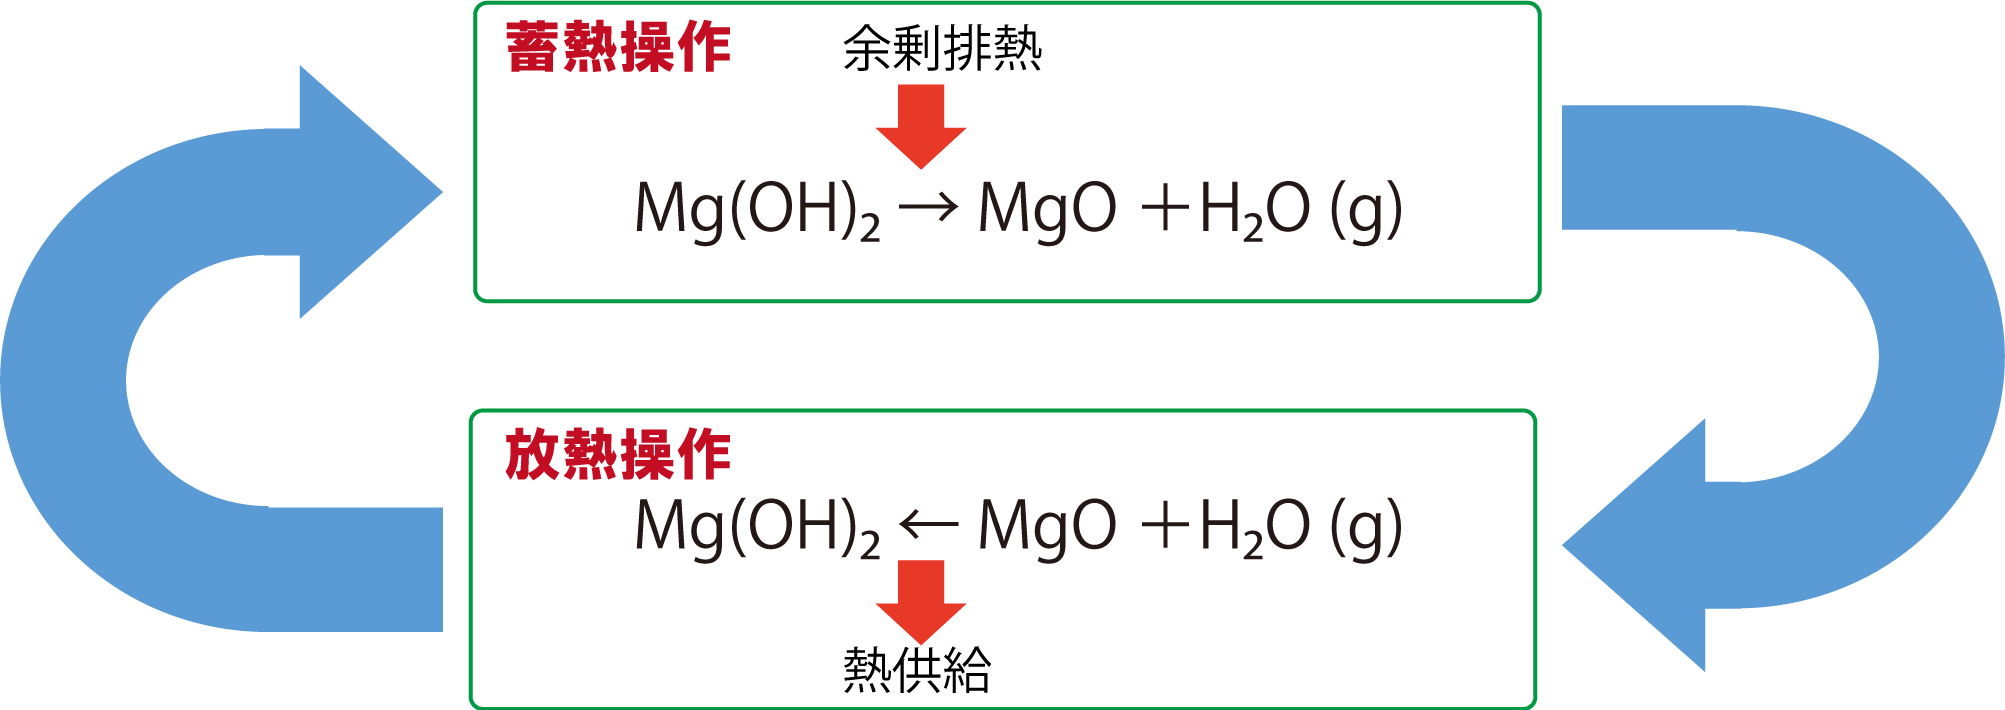 水酸化マグネシウム系化学蓄熱材CHARGEMAG®の蓄熱および放熱の原理